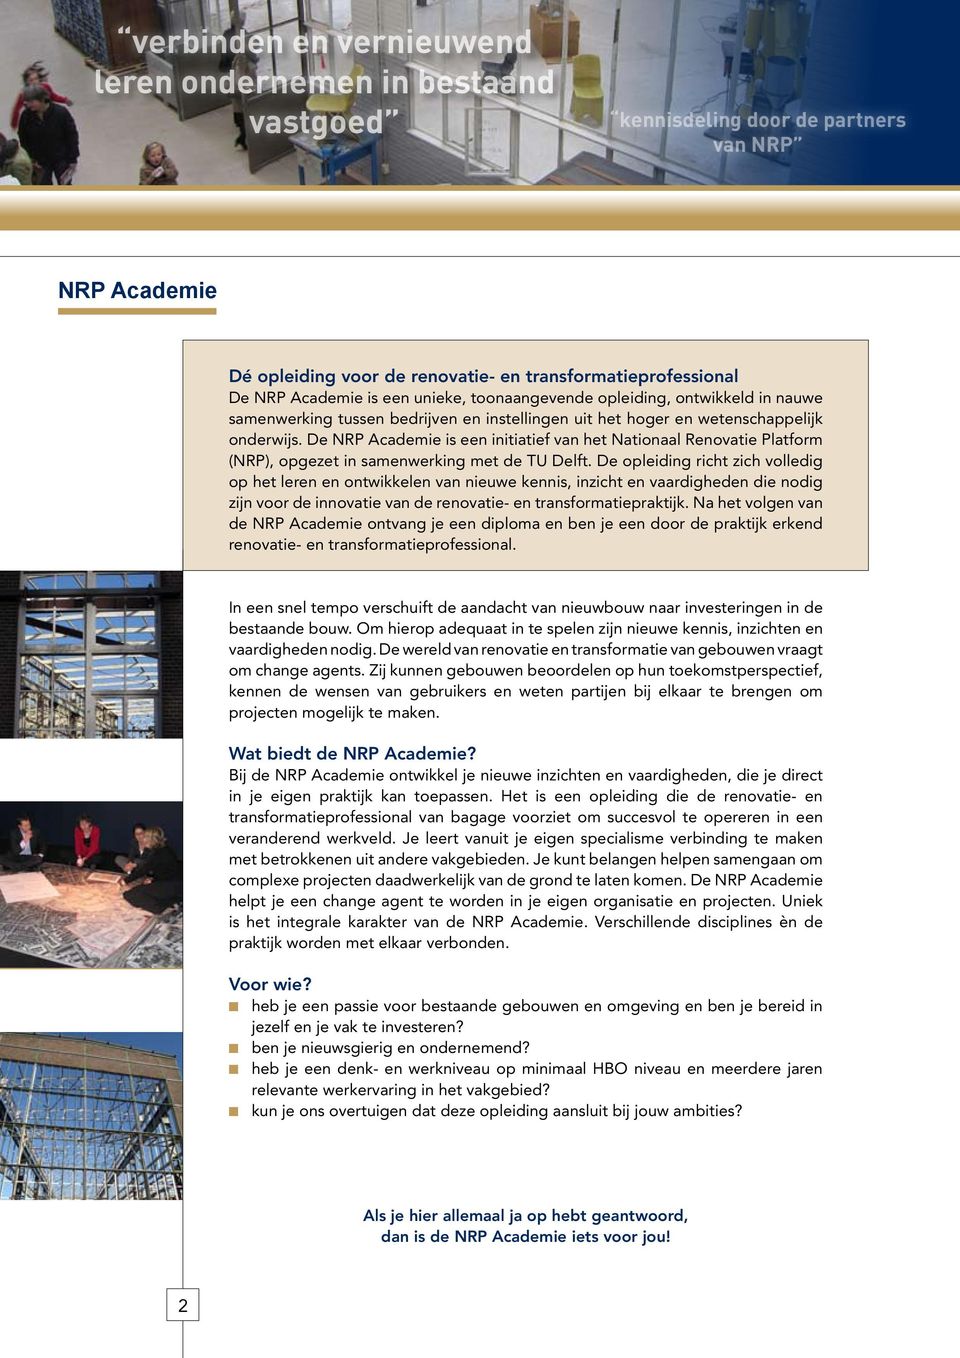 De NRP Academie is een initiatief van het Nationaal Renovatie Platform (NRP), opgezet in samenwerking met de TU Delft.